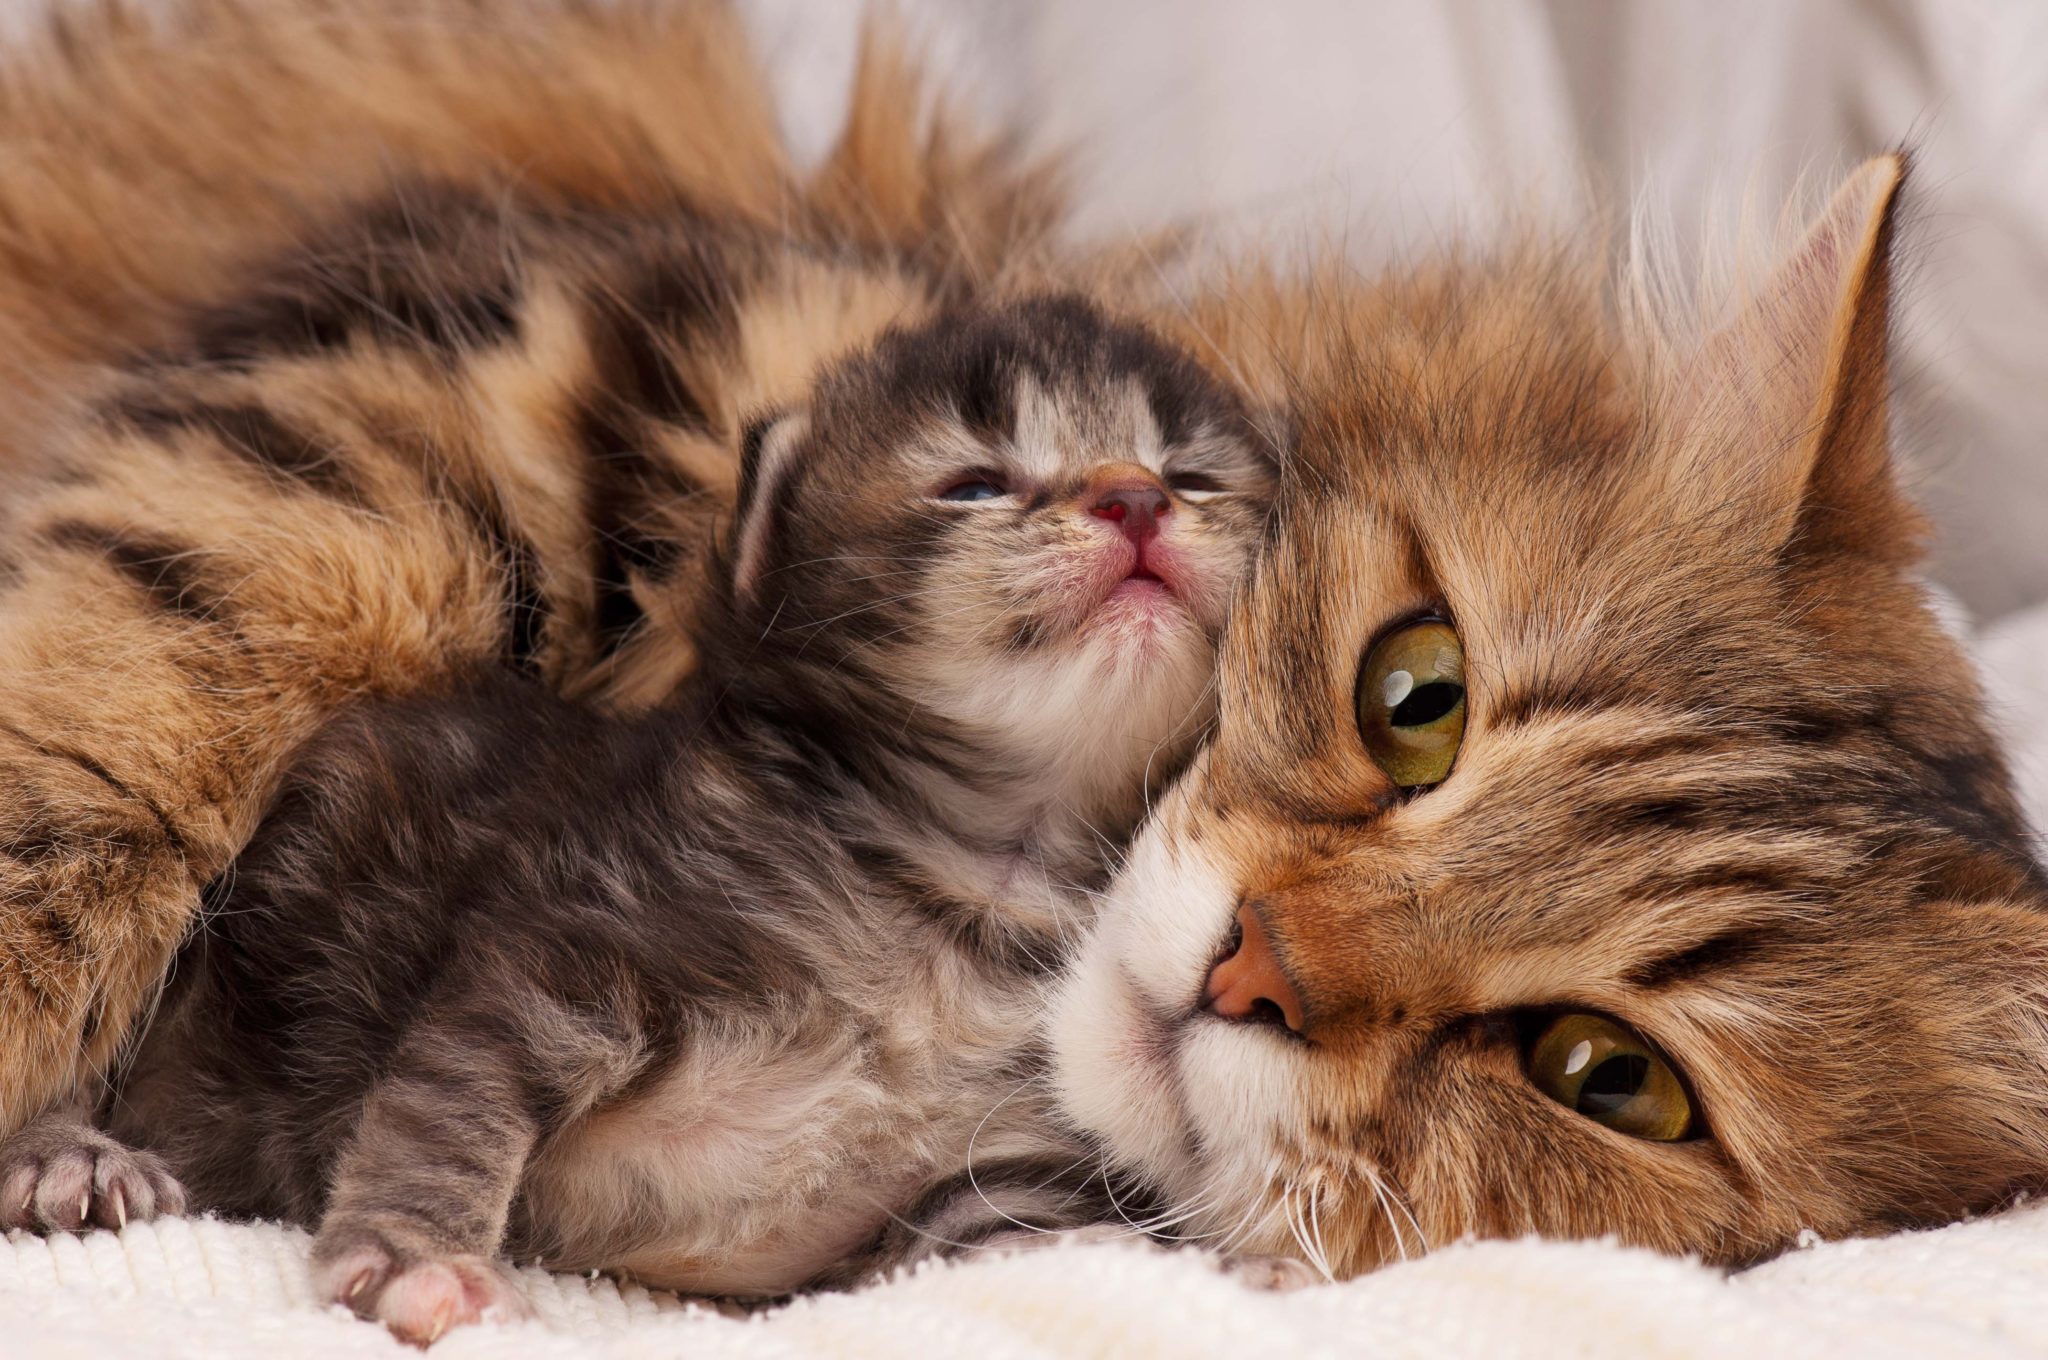 Le chat peut être jaloux de bébé : vrai ou faux ?